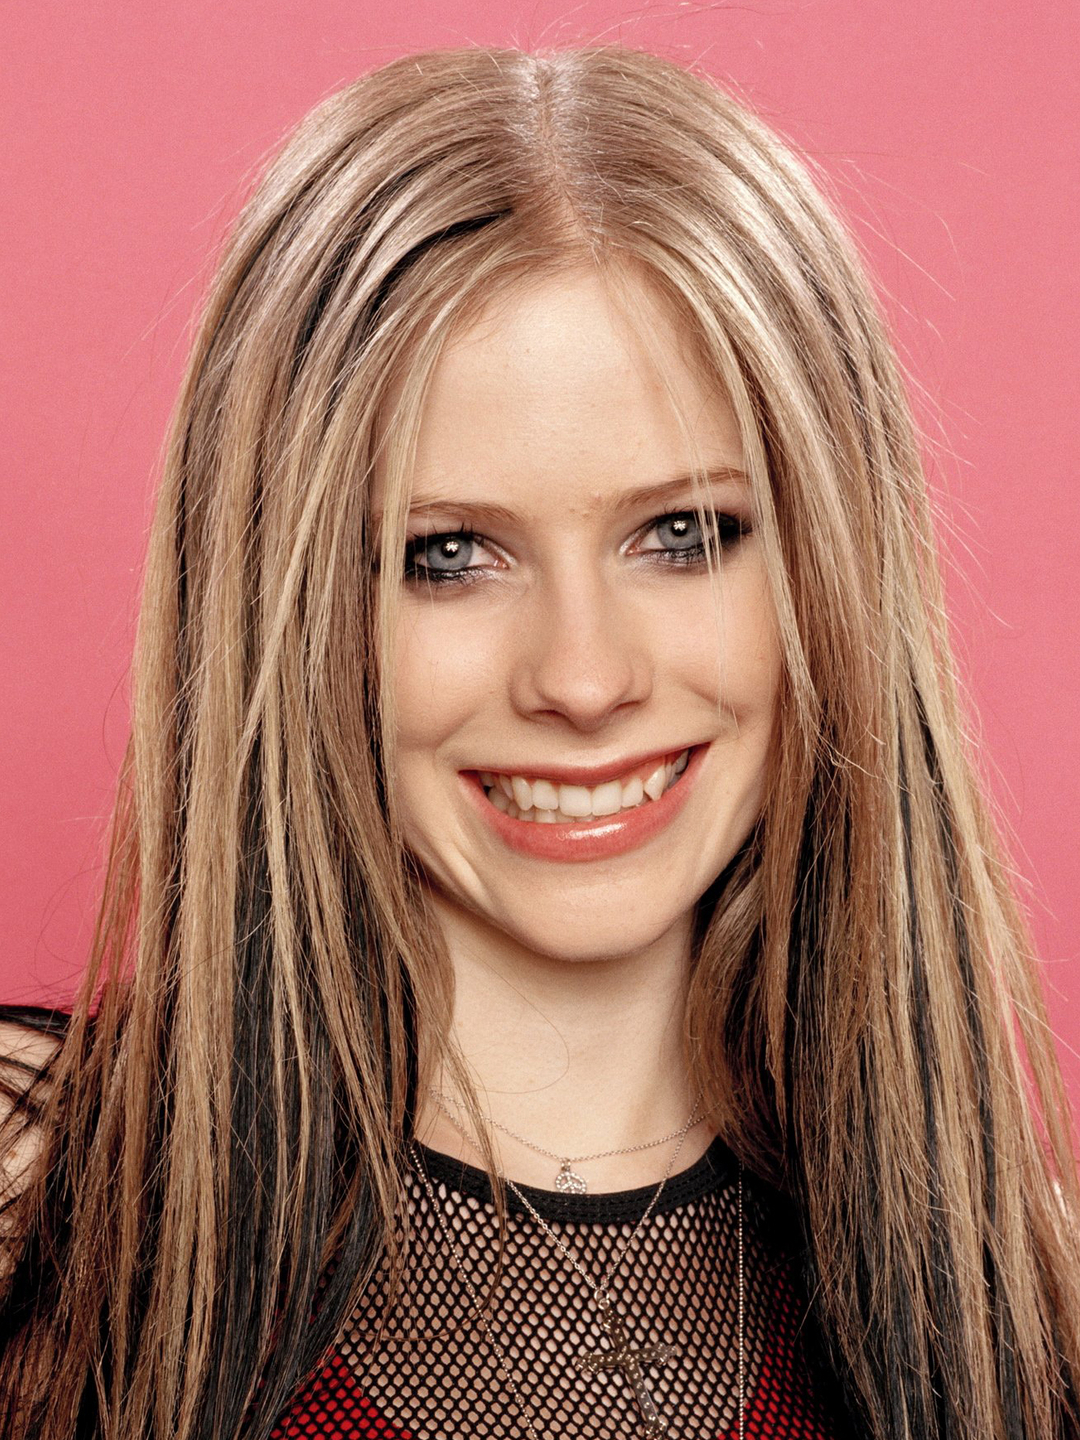 Avril Lavigne in real life